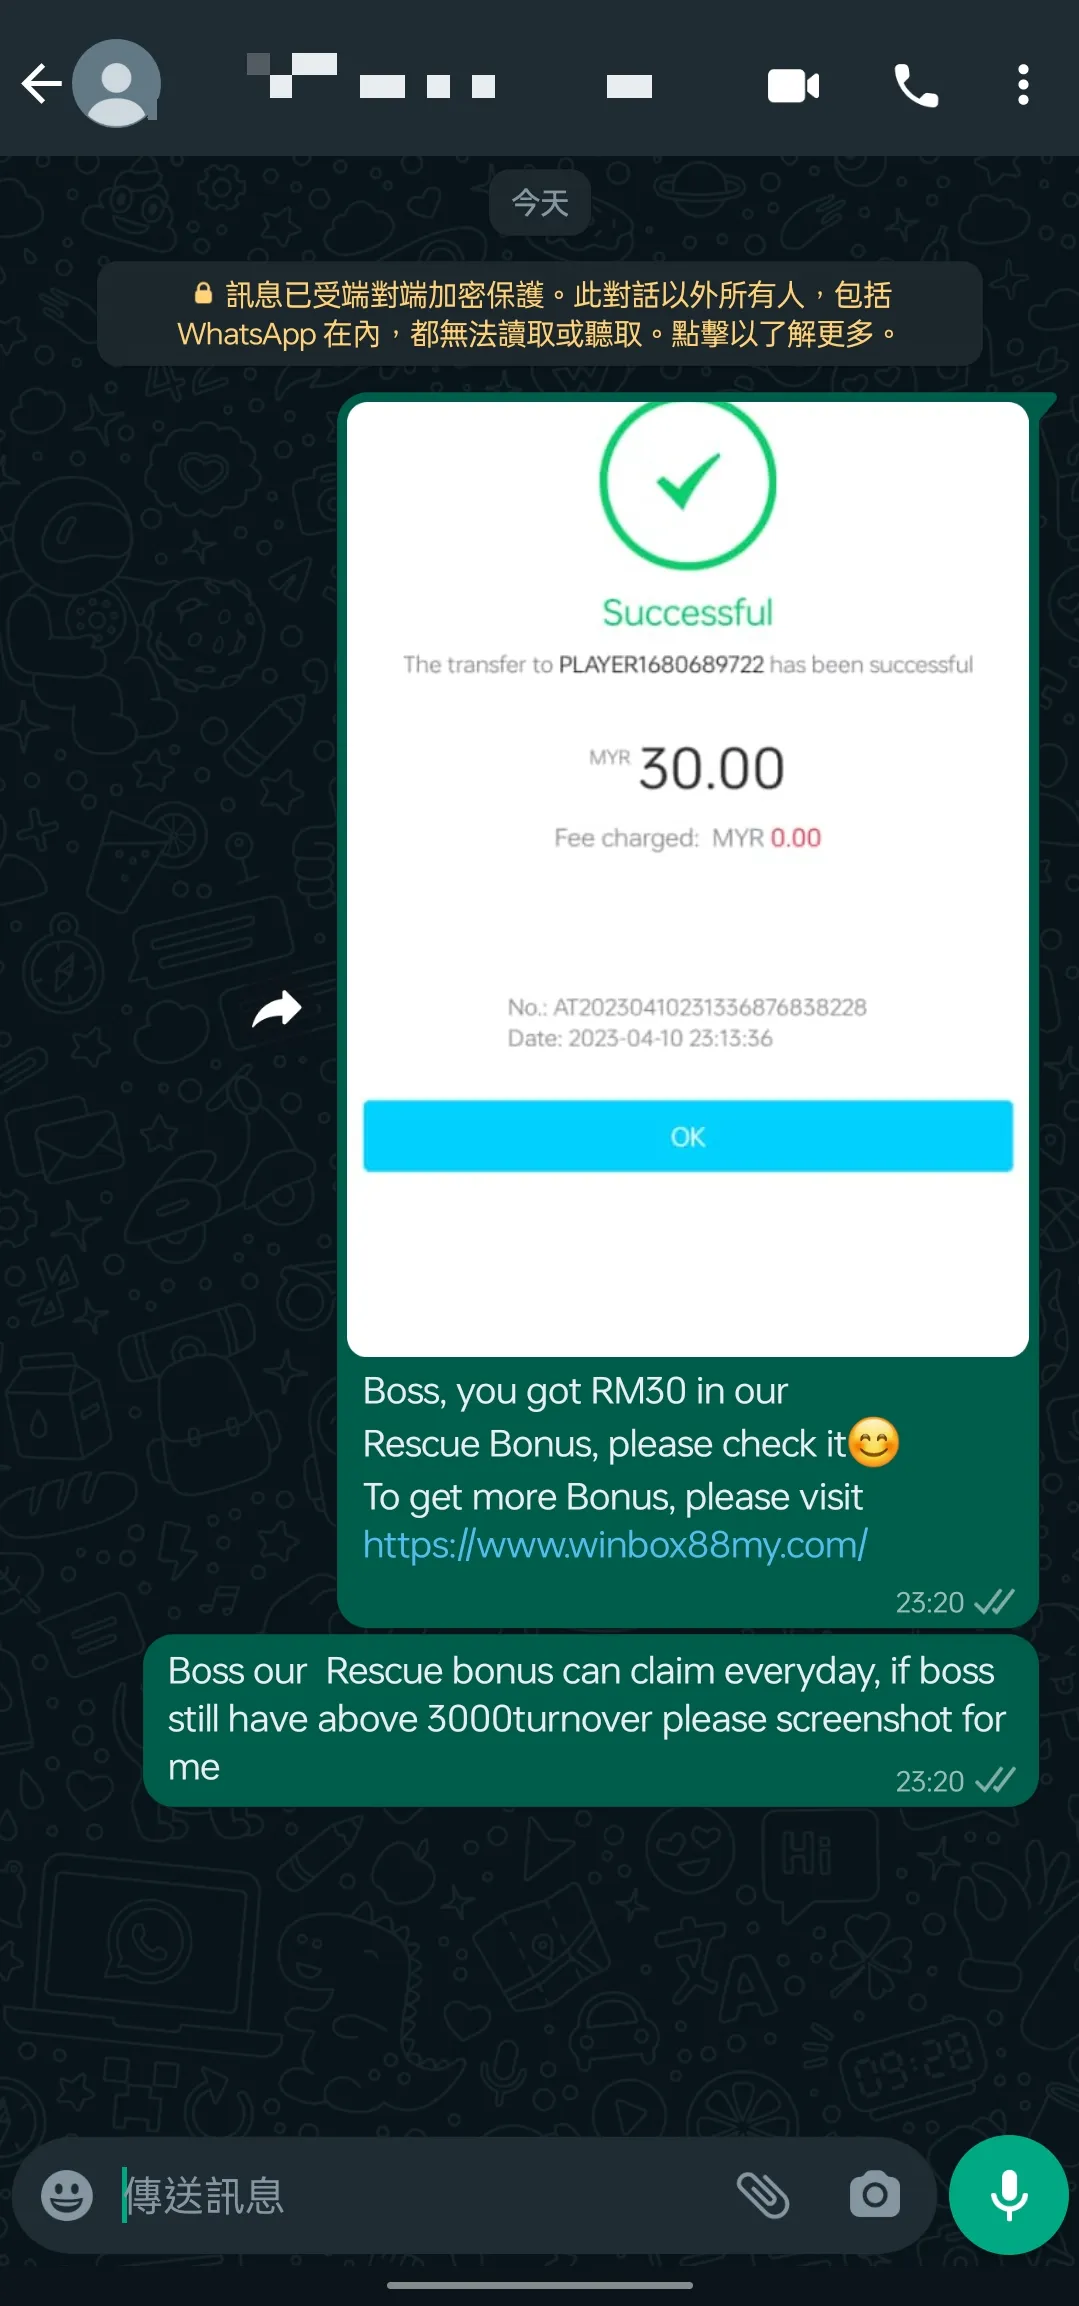 winbox rescue bonus past winner screenshot 89